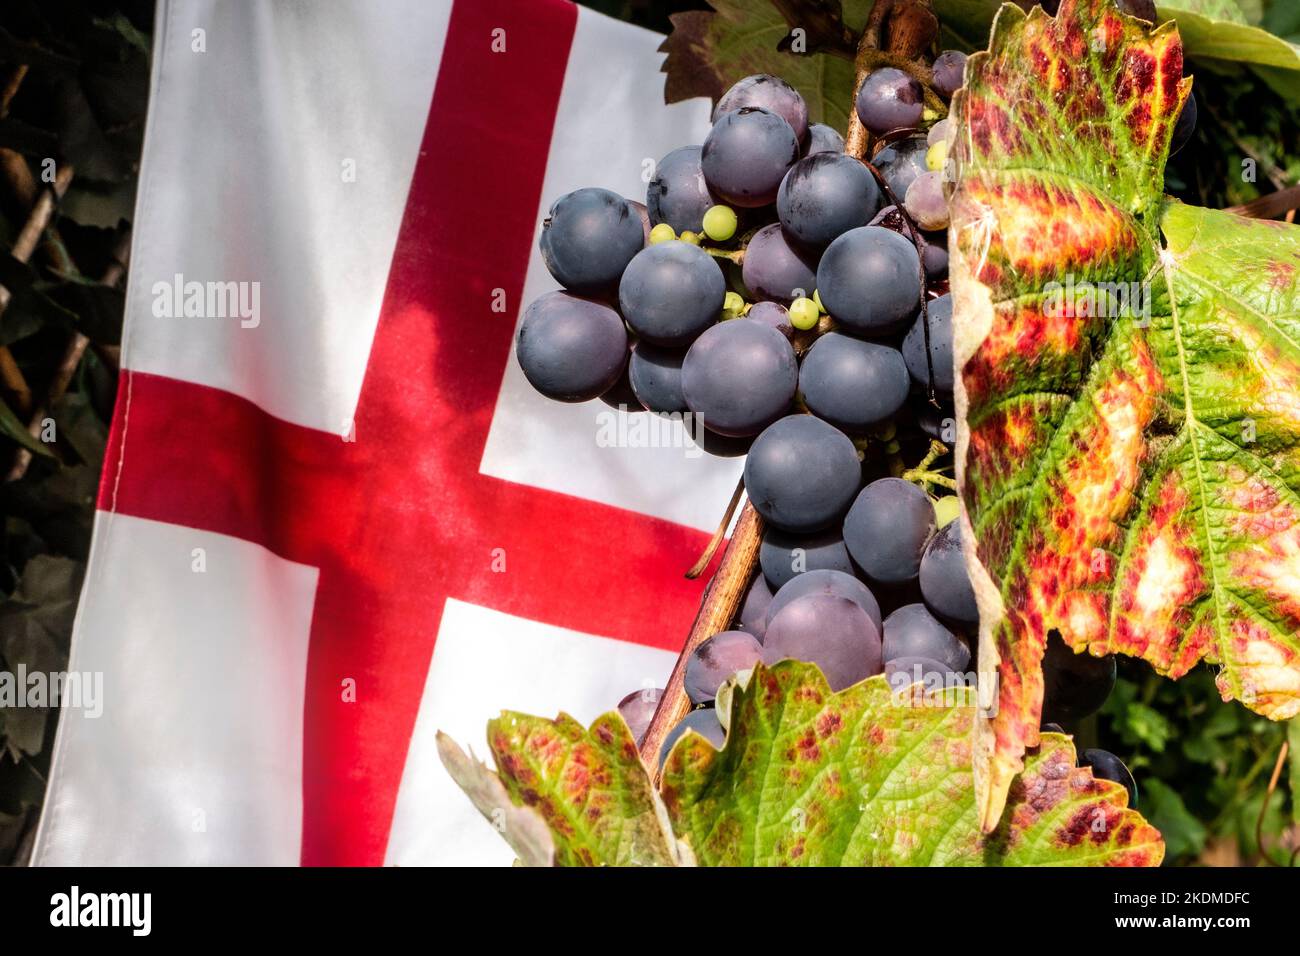 Englisches britisches Weintraubenernteproduktionskonzept. Schuyler reifendes Traubenbündel in Großbritannien mit britischem Flaggenkreuz von Saint George hinter sich, Stockfoto